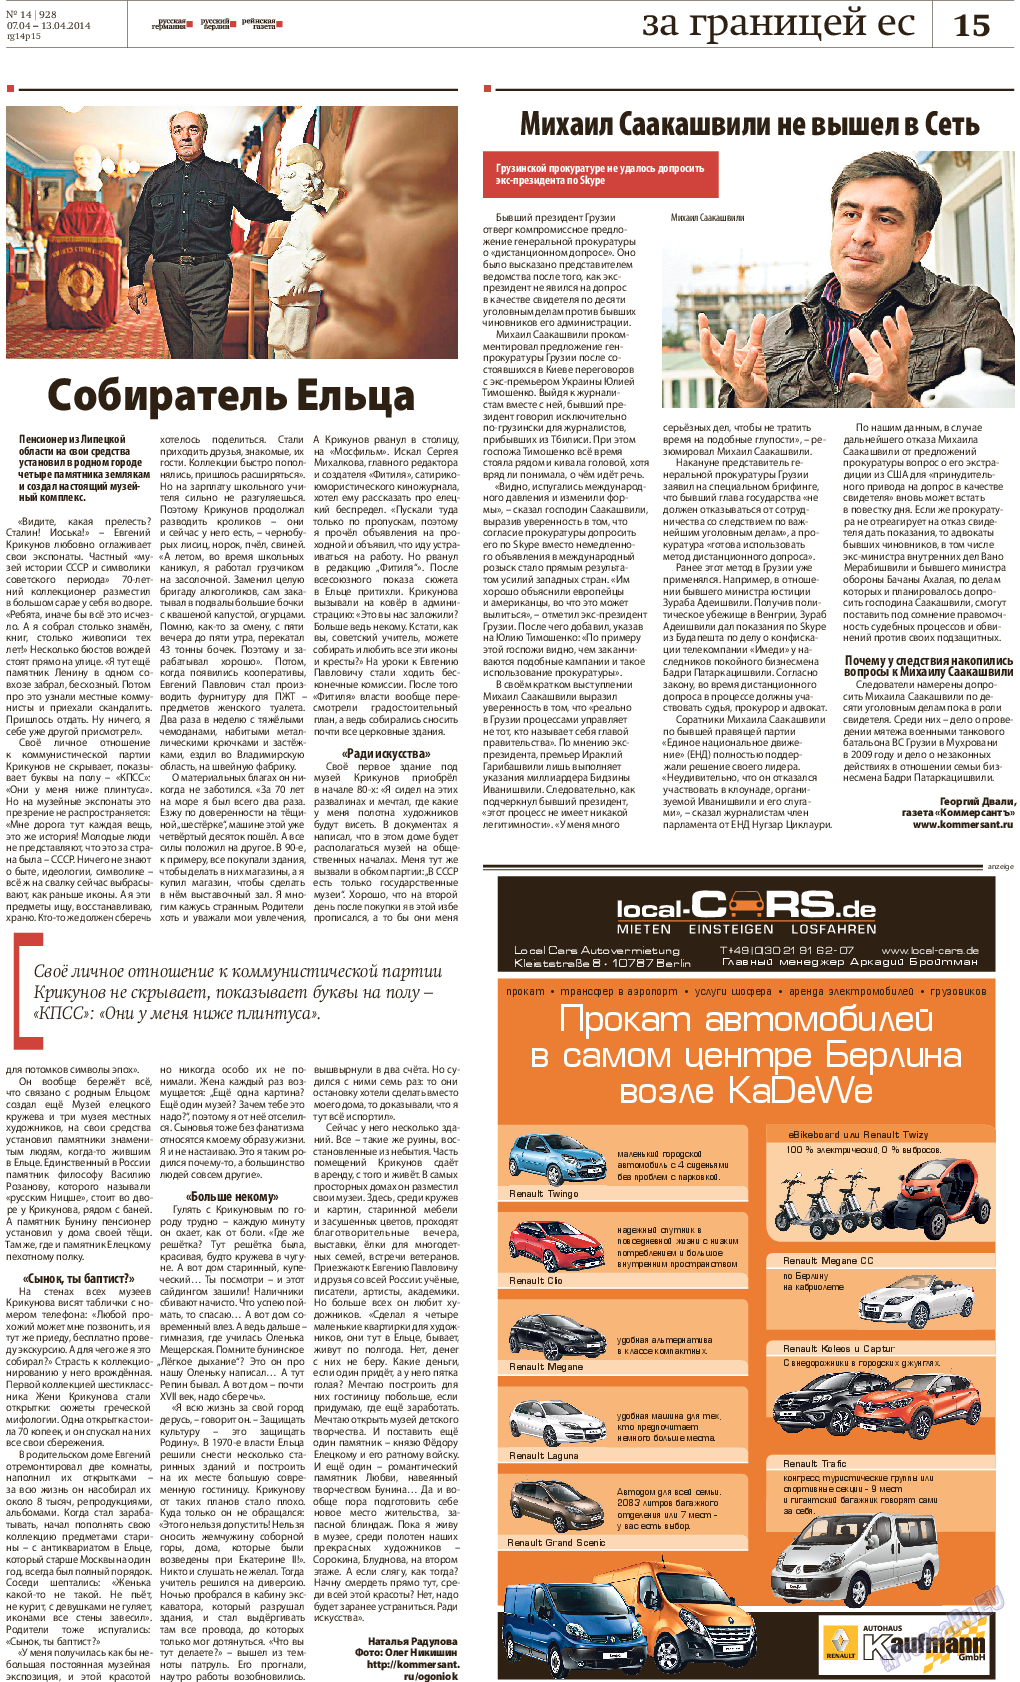 Рейнская газета, газета. 2014 №14 стр.15